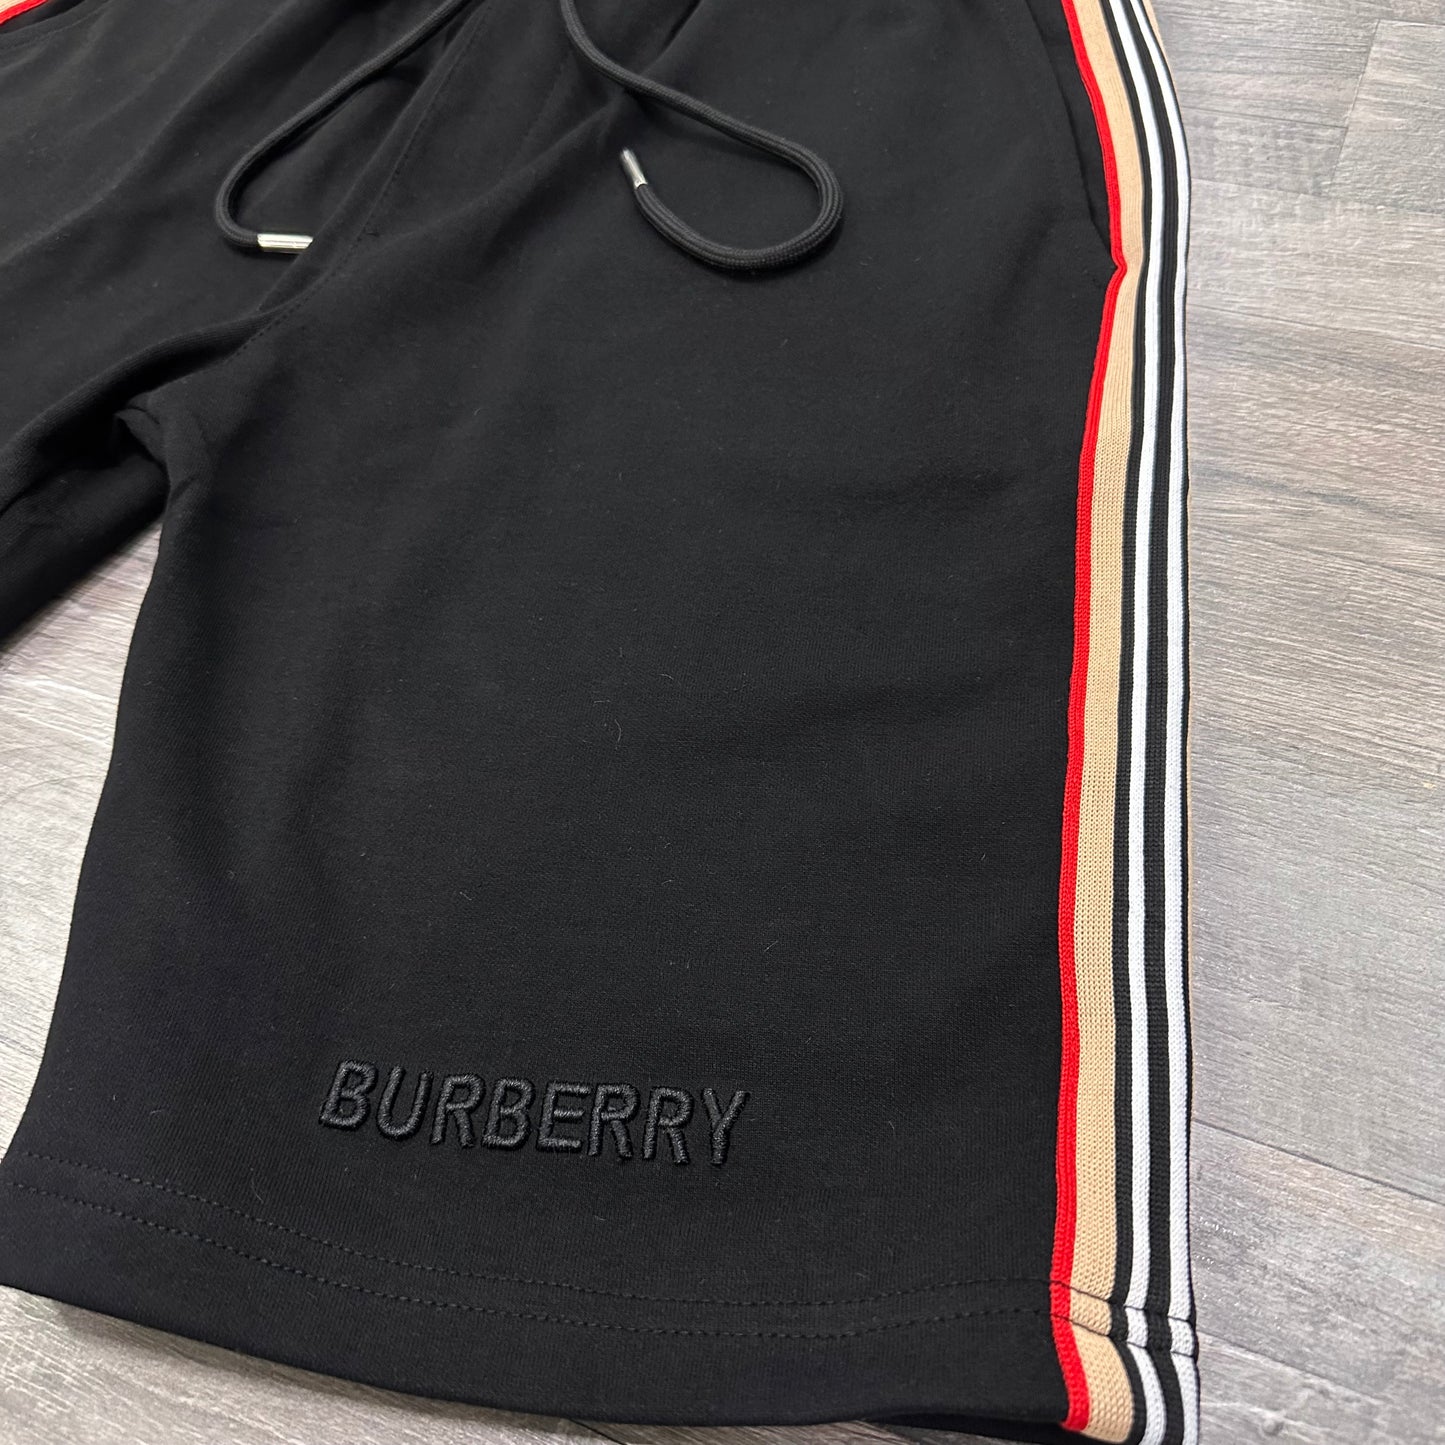 Burberry Set Black NO 34